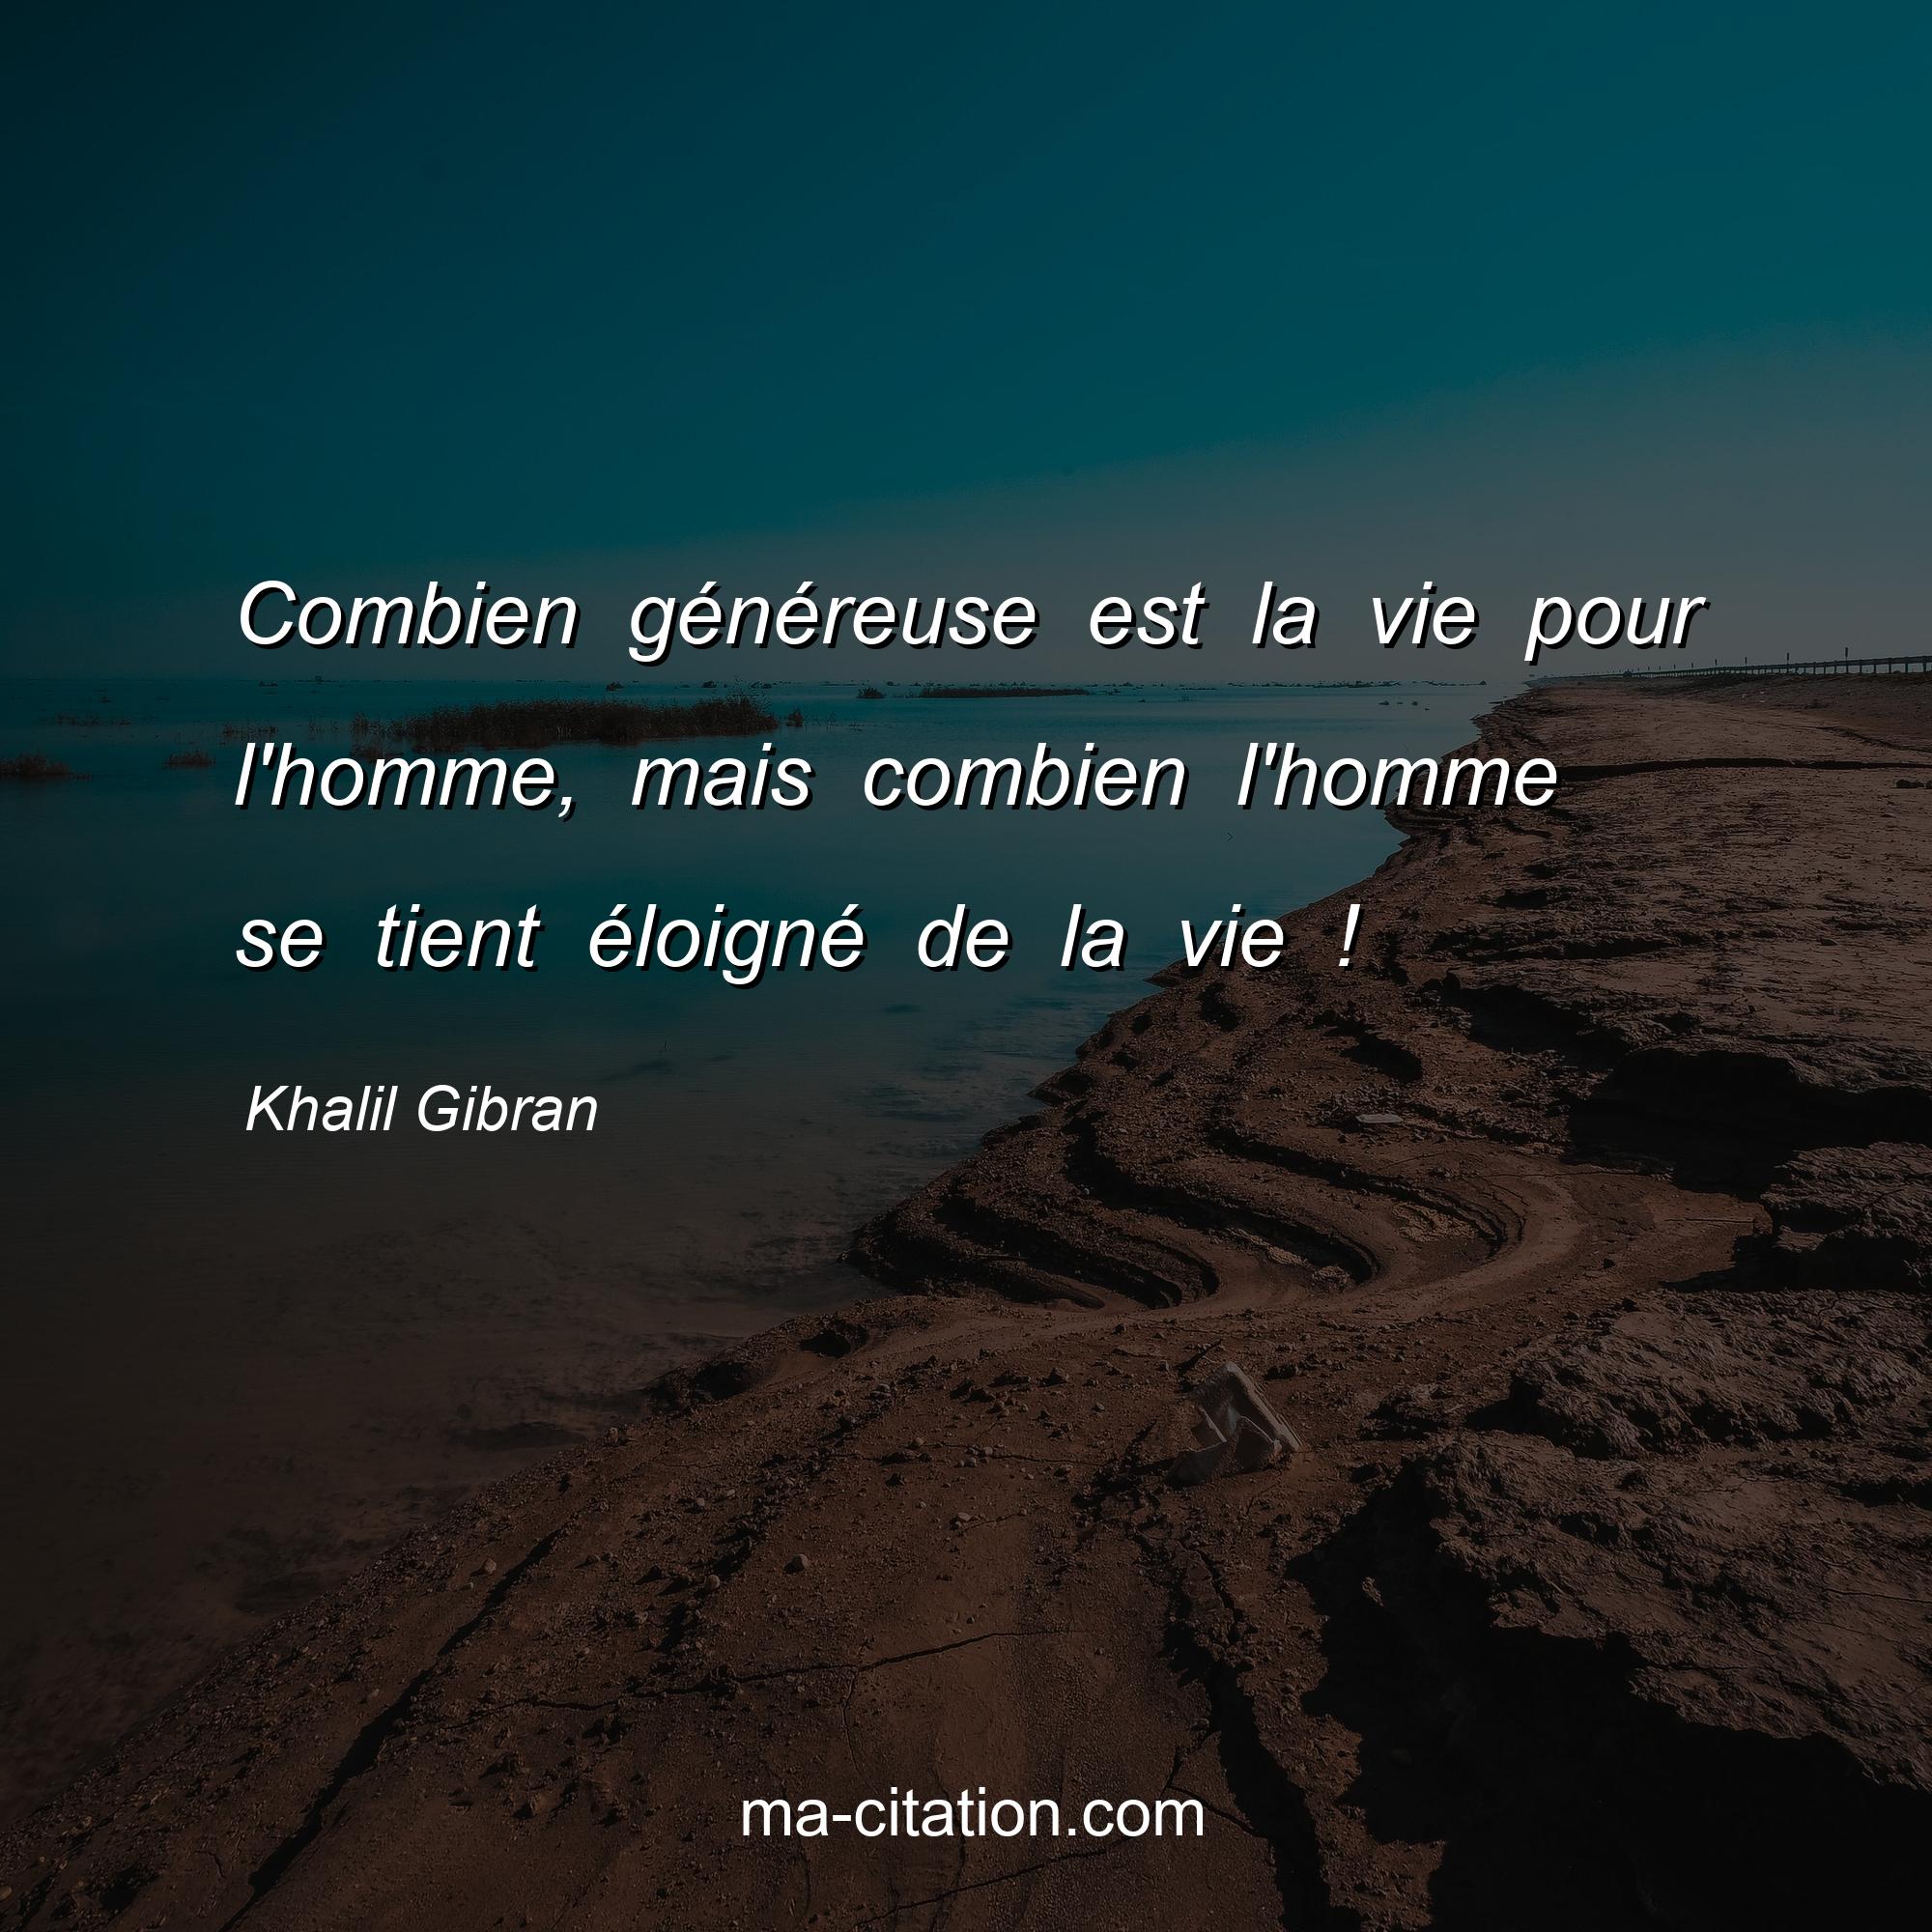 Khalil Gibran : Combien généreuse est la vie pour l'homme, mais combien l'homme se tient éloigné de la vie !